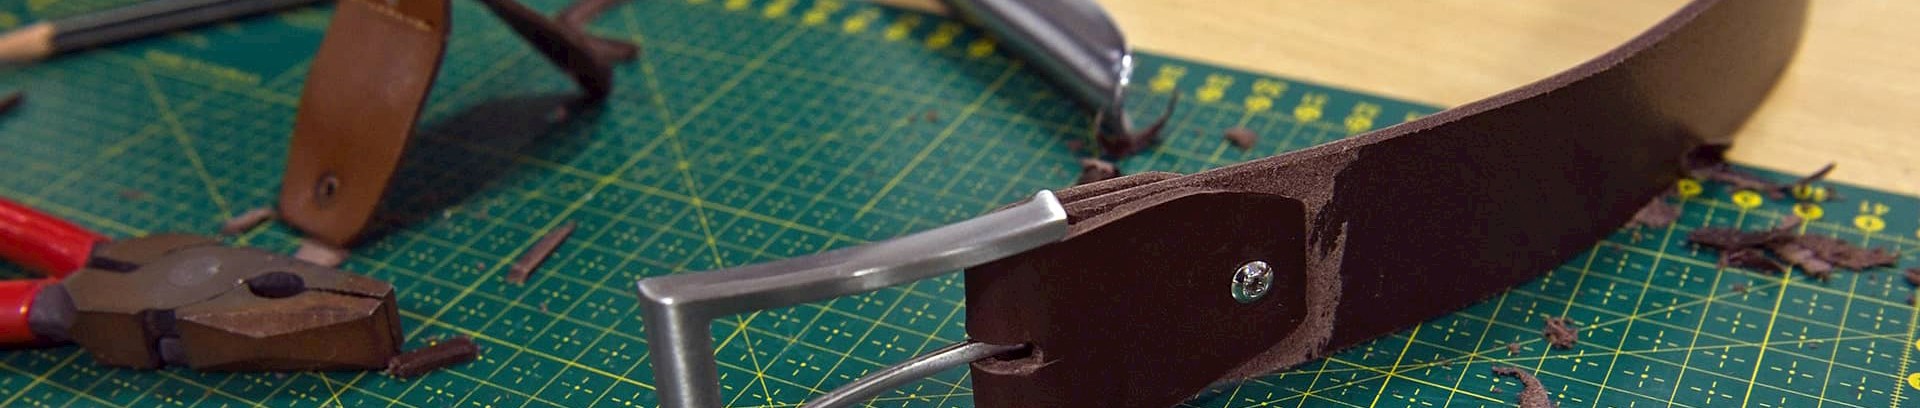 Læderbælte lavet på kursus i små ting i læder | FOF Aarhus